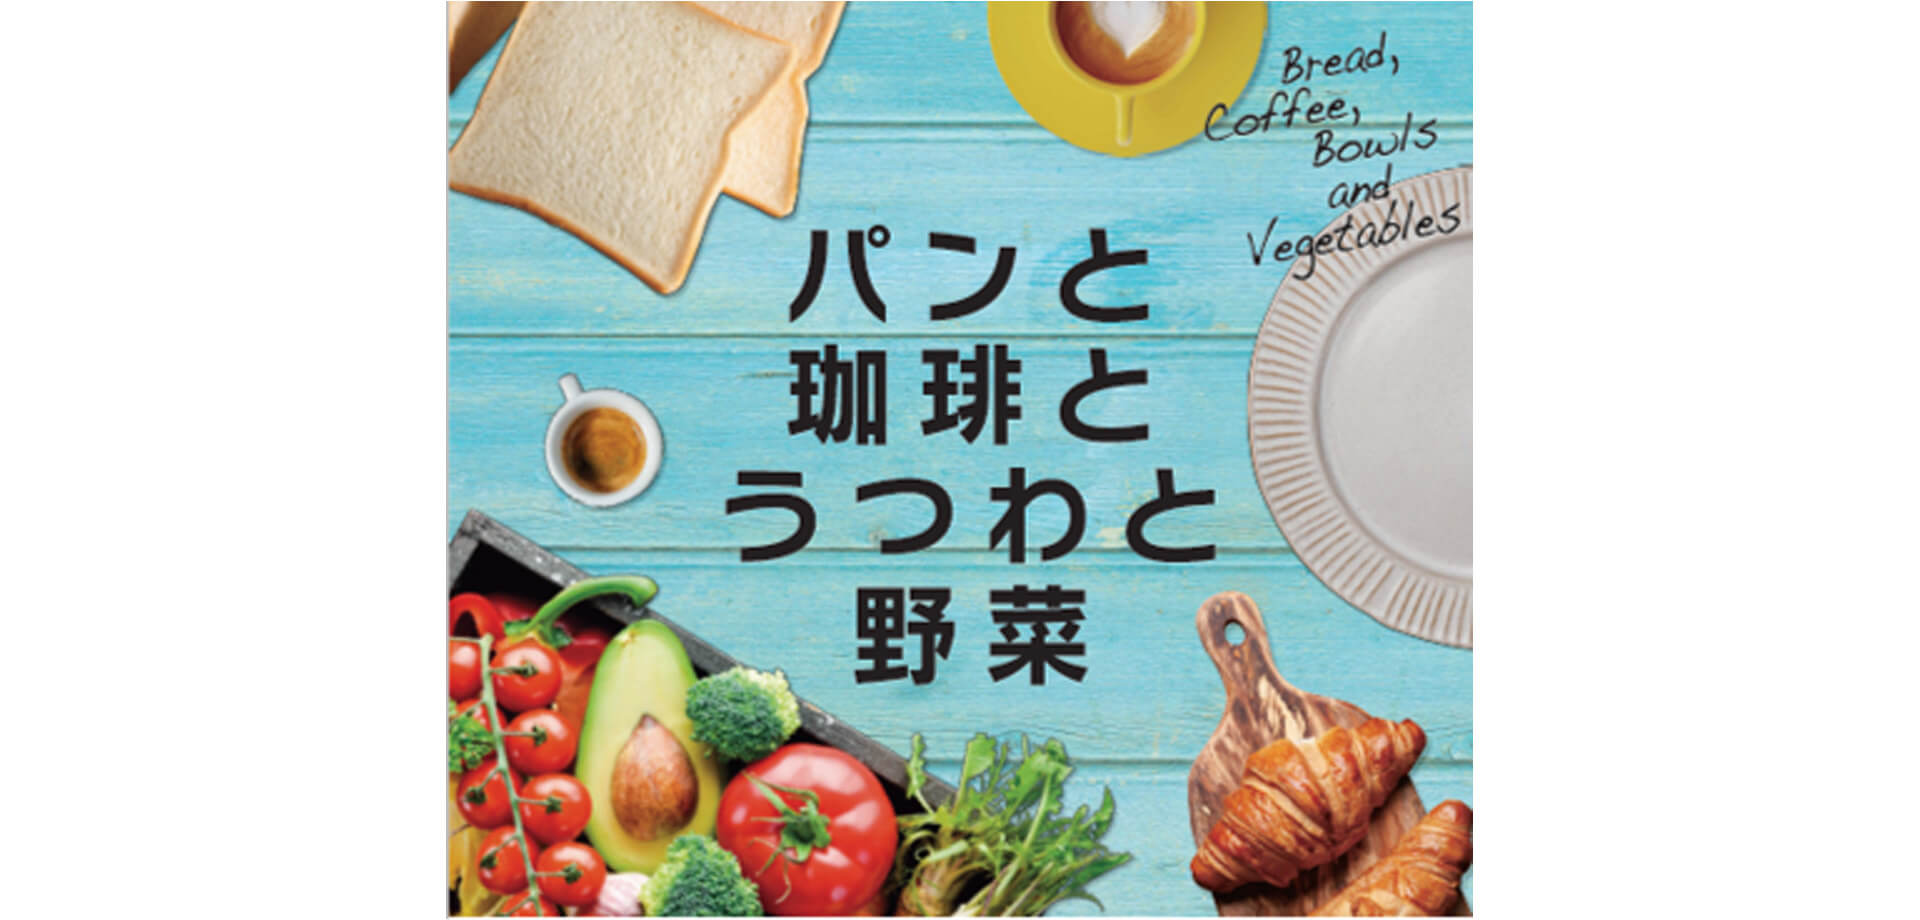 パンと珈琲とうつわと野菜 JR横浜タワー 2Fアトリウム